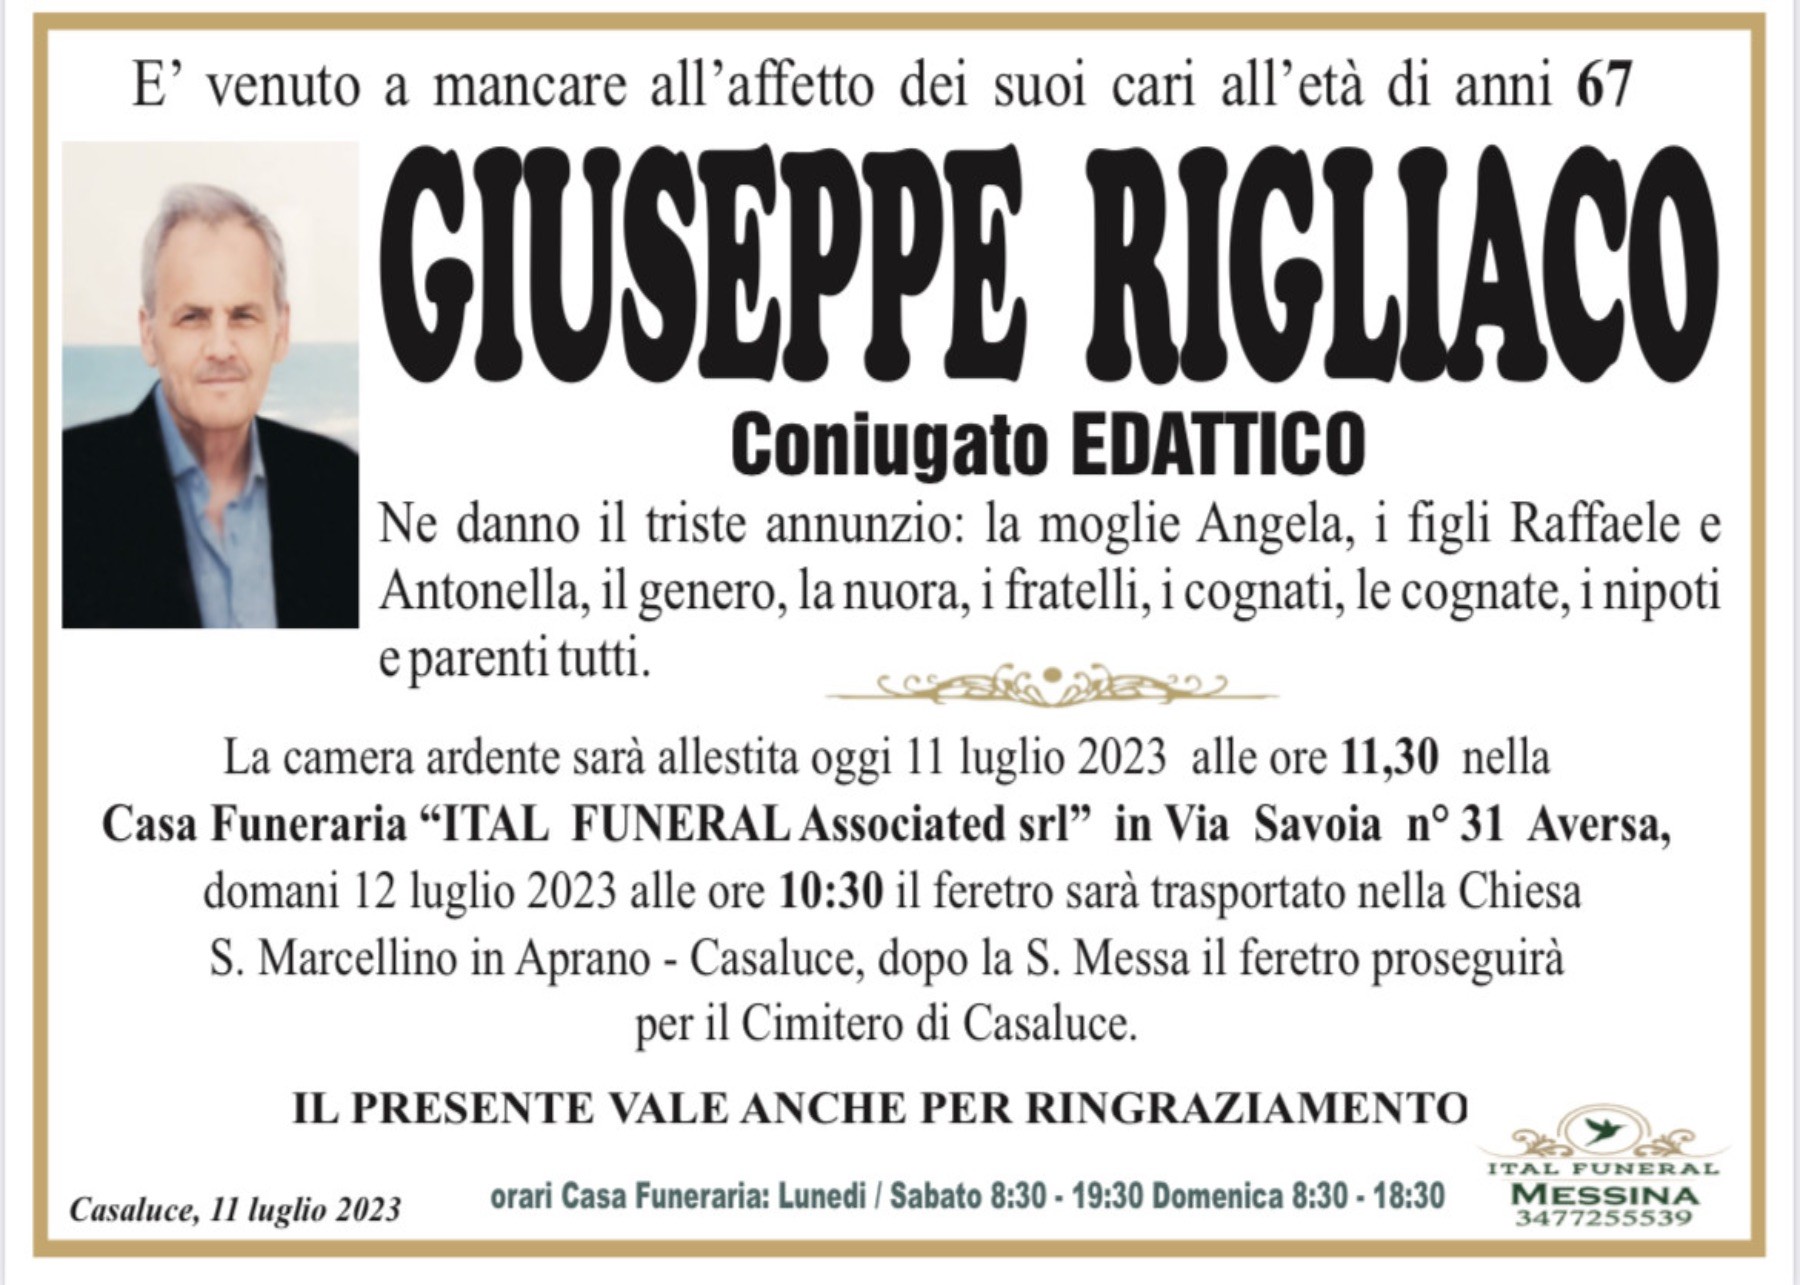 Giuseppe Rigliaco